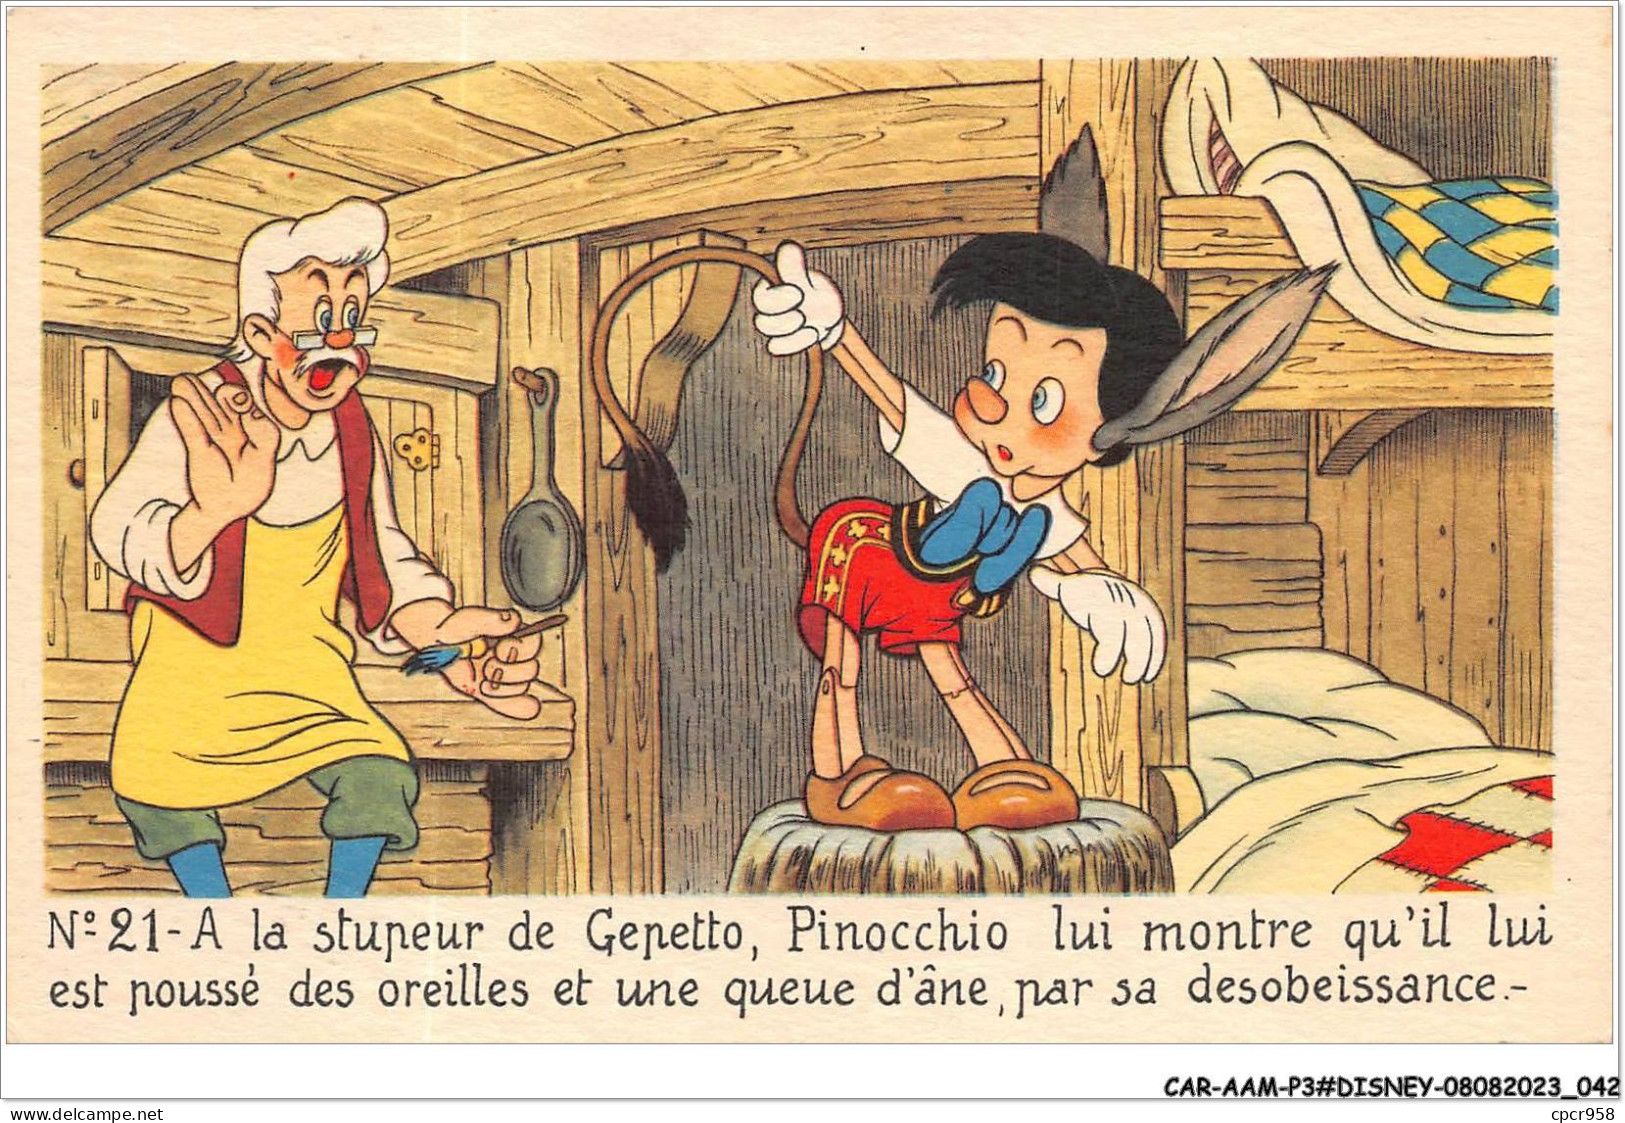 CAR-AAMP3-DISNEY-0231 - Pinocchio - A La Stupeur De Gepetto Pinocchio Lui Montre Qu'il Lui A Poussé Oreillres - N°21 - Disneyland